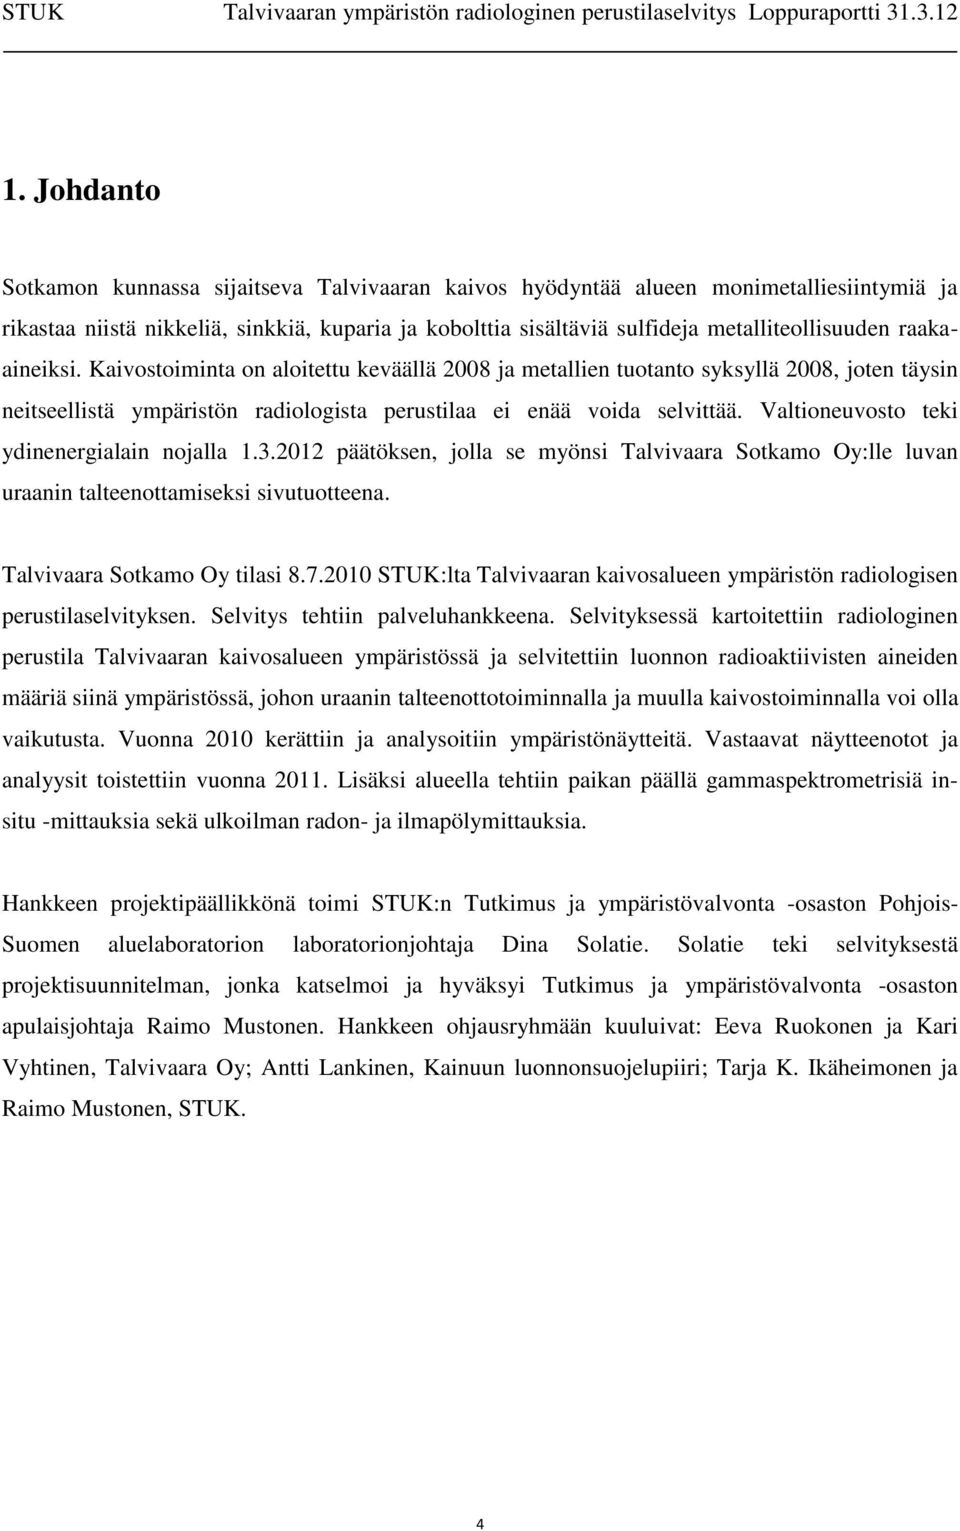 Valtioneuvosto teki ydinenergialain nojalla 1.3.2012 päätöksen, jolla se myönsi Talvivaara Sotkamo Oy:lle luvan uraanin talteenottamiseksi sivutuotteena. Talvivaara Sotkamo Oy tilasi 8.7.